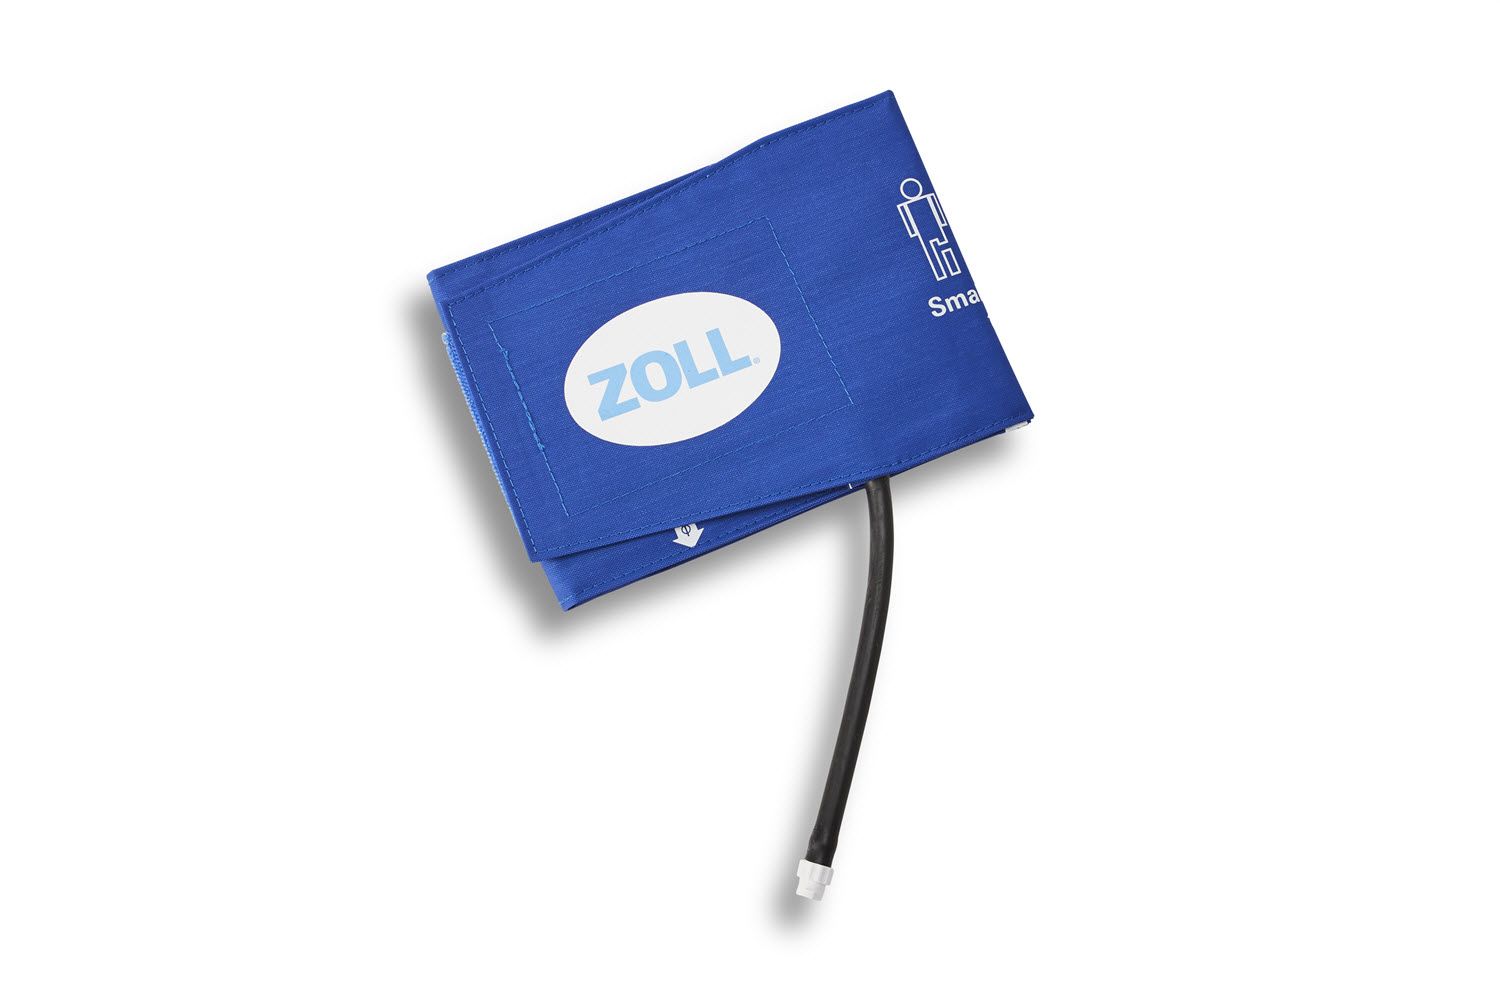 Zoll Cuff All Purpose Pediatric - Small Adult 8000-1650